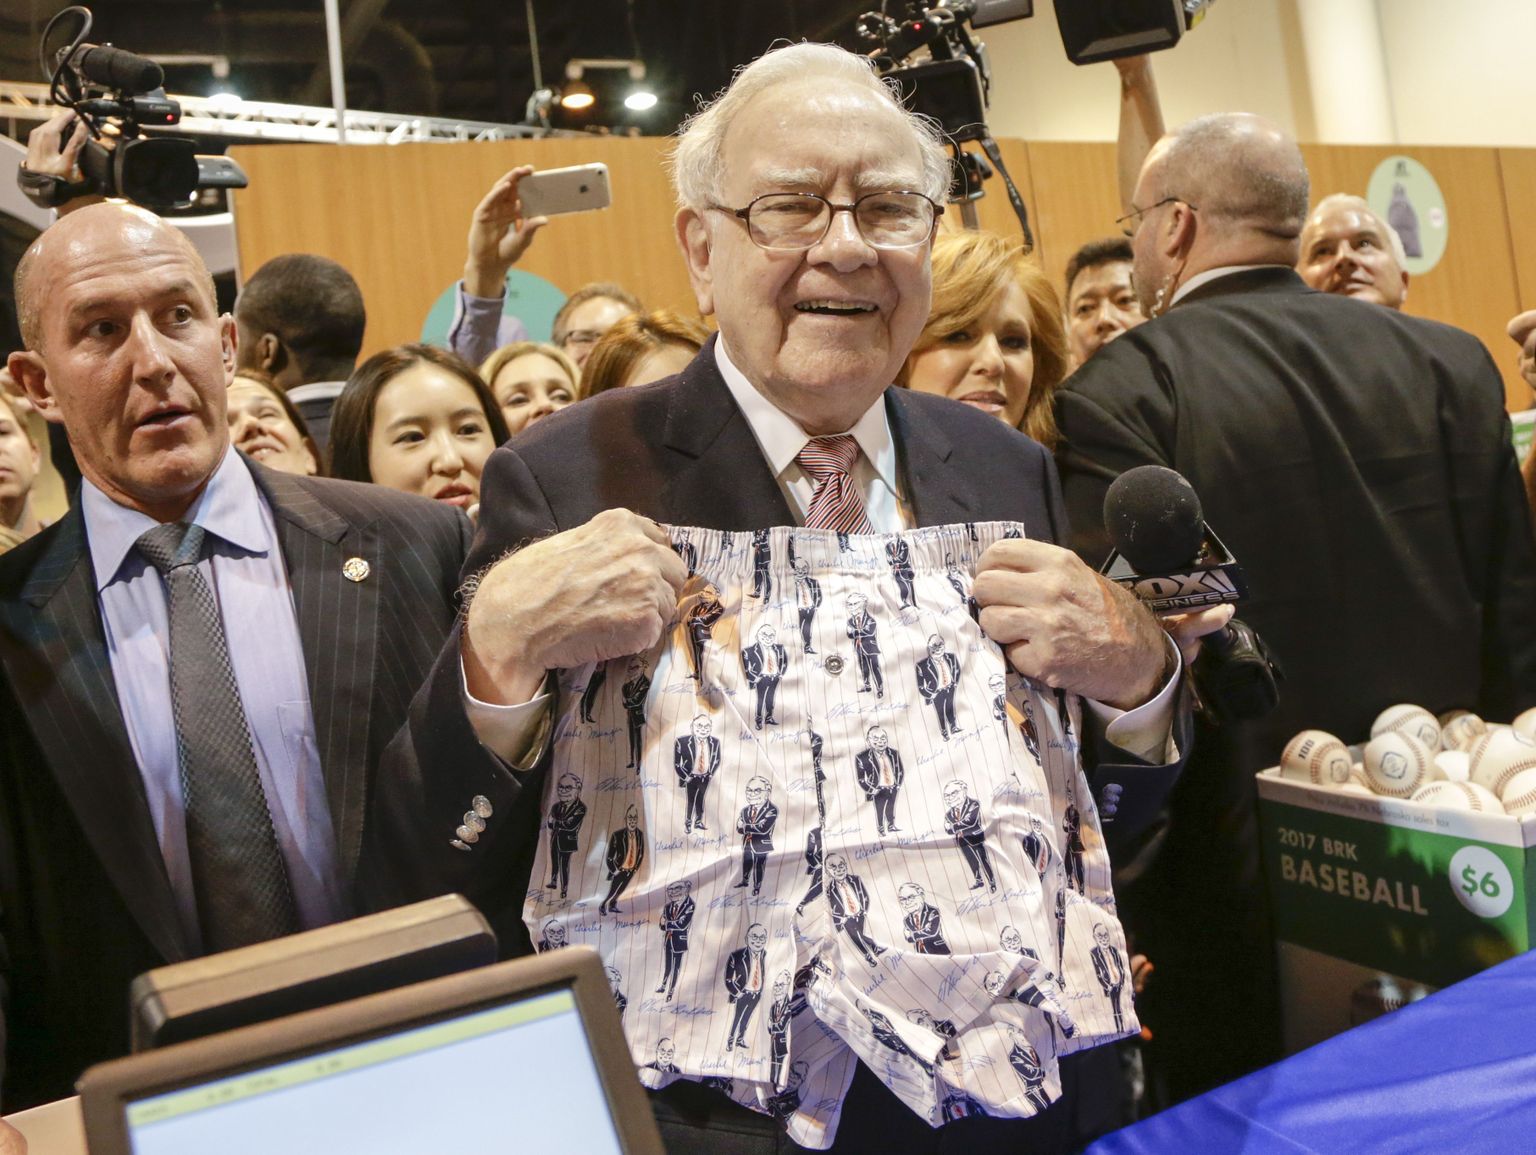 Berkshire Hathaway suuromanik ja juht Warren Buffett demonstreerib pesutootja Fruit of the Loom, mis kuulub Berkshirele, aluspükse.